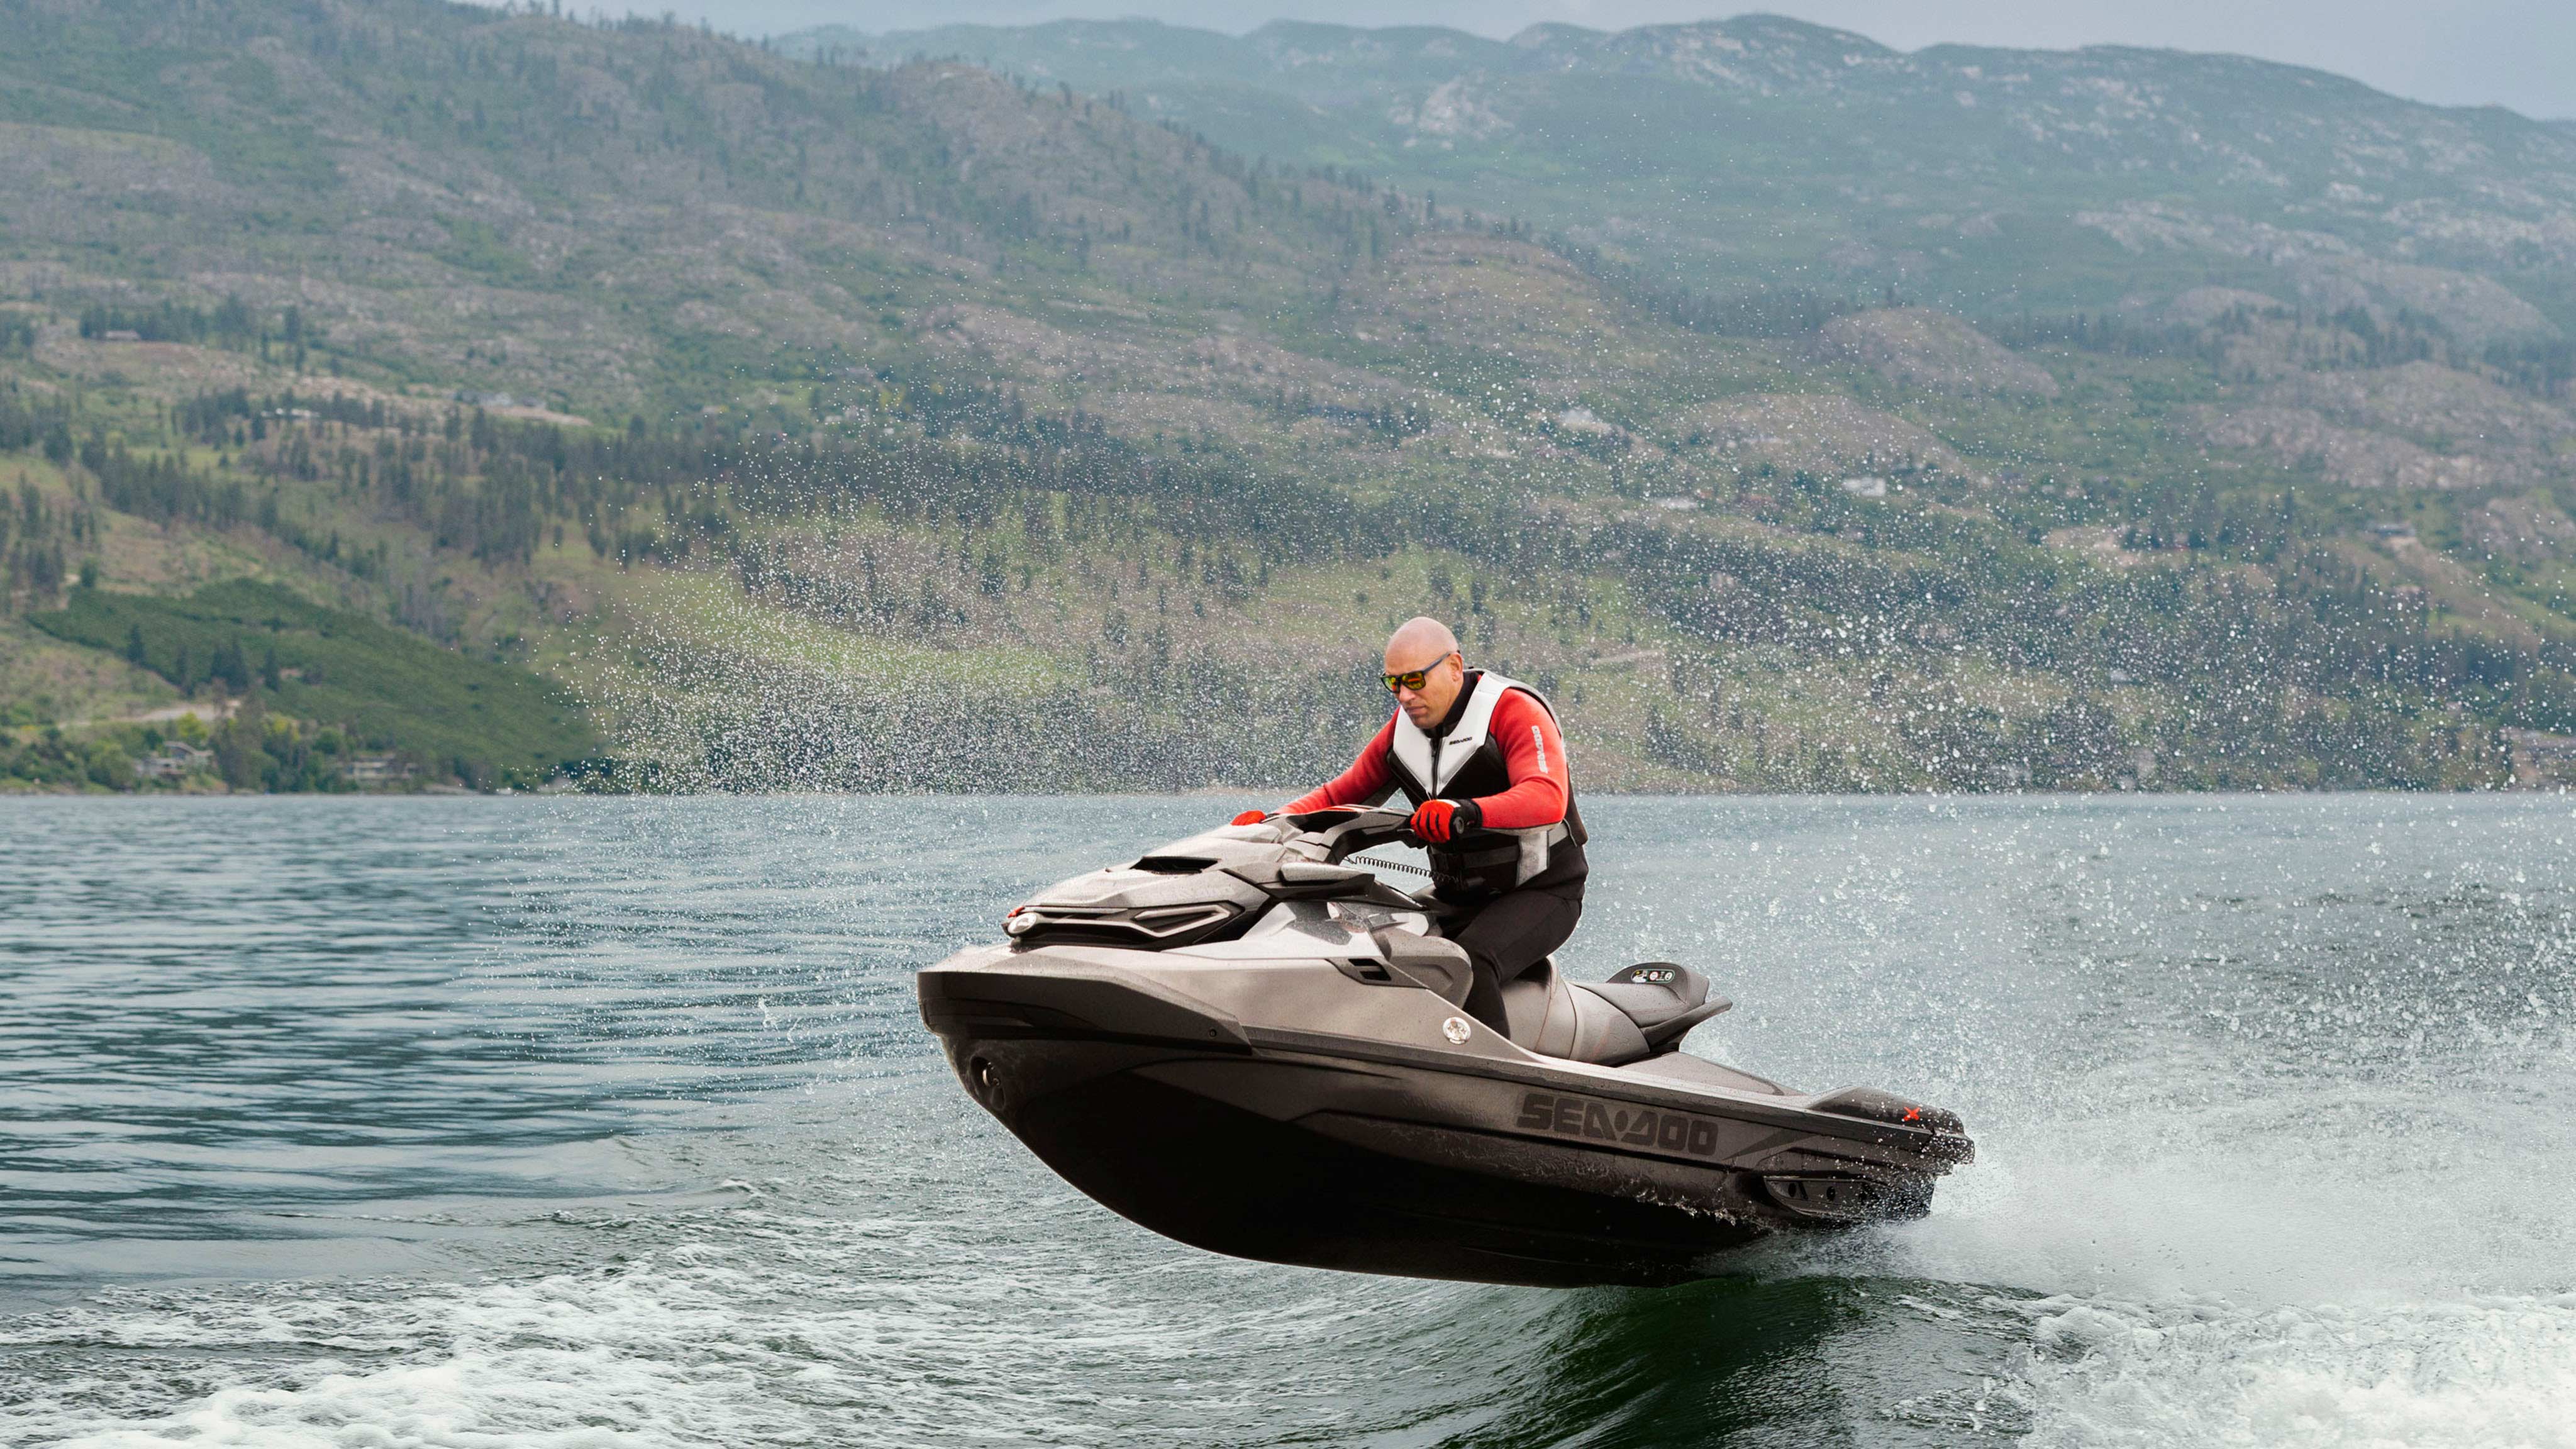 一位男士驾驶 Sea-Doo RXT-X 摩托艇越过海浪